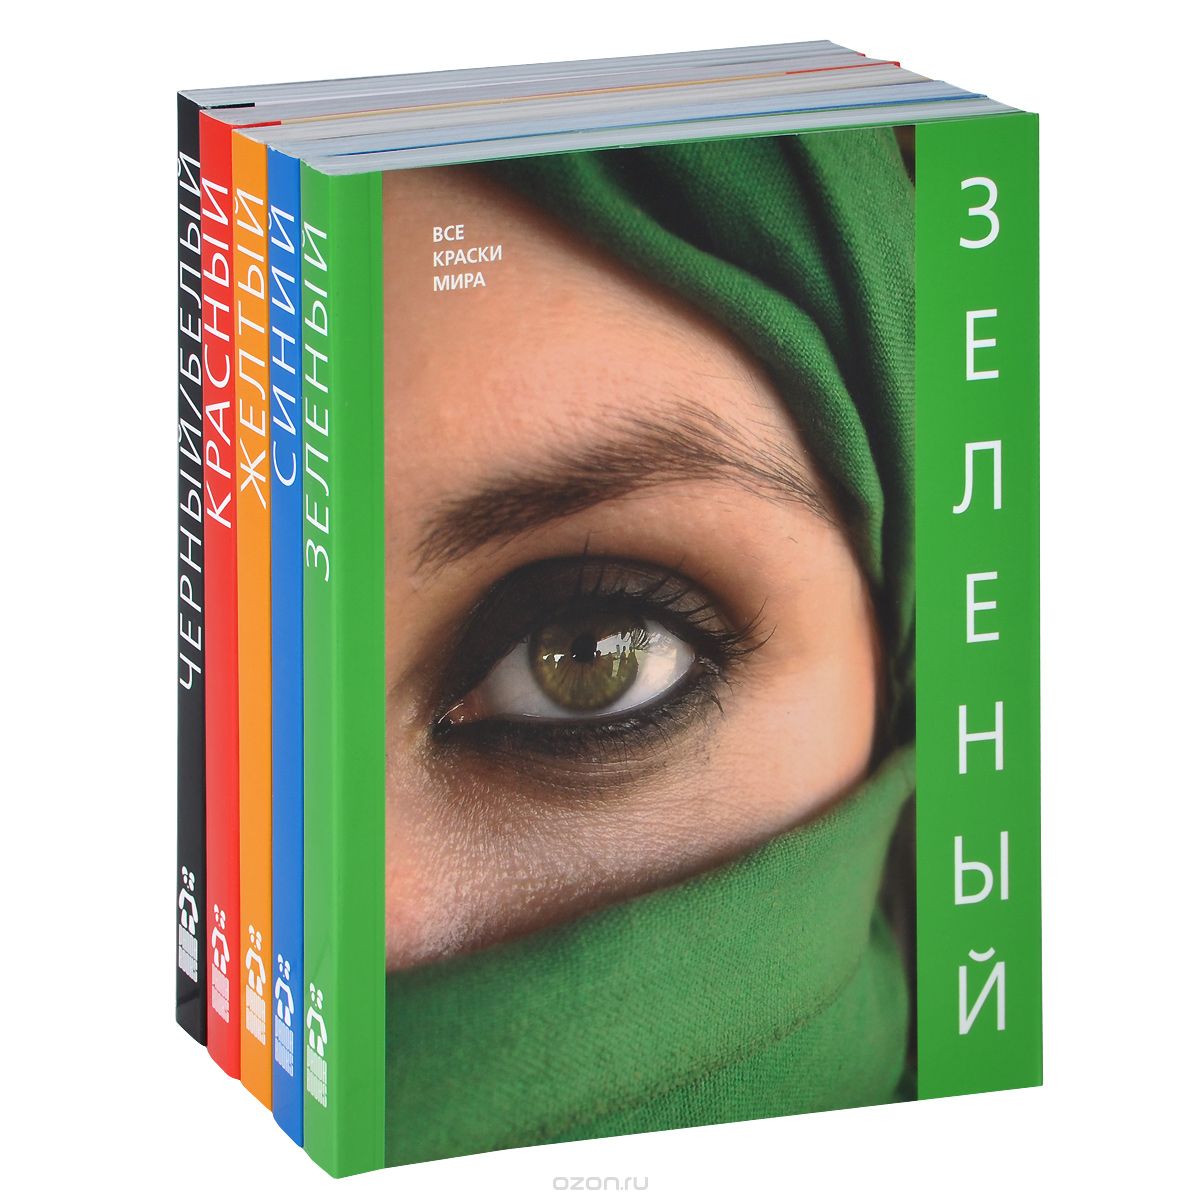 Все краски мира (комплект из 5 книг), Наталья Матвеева